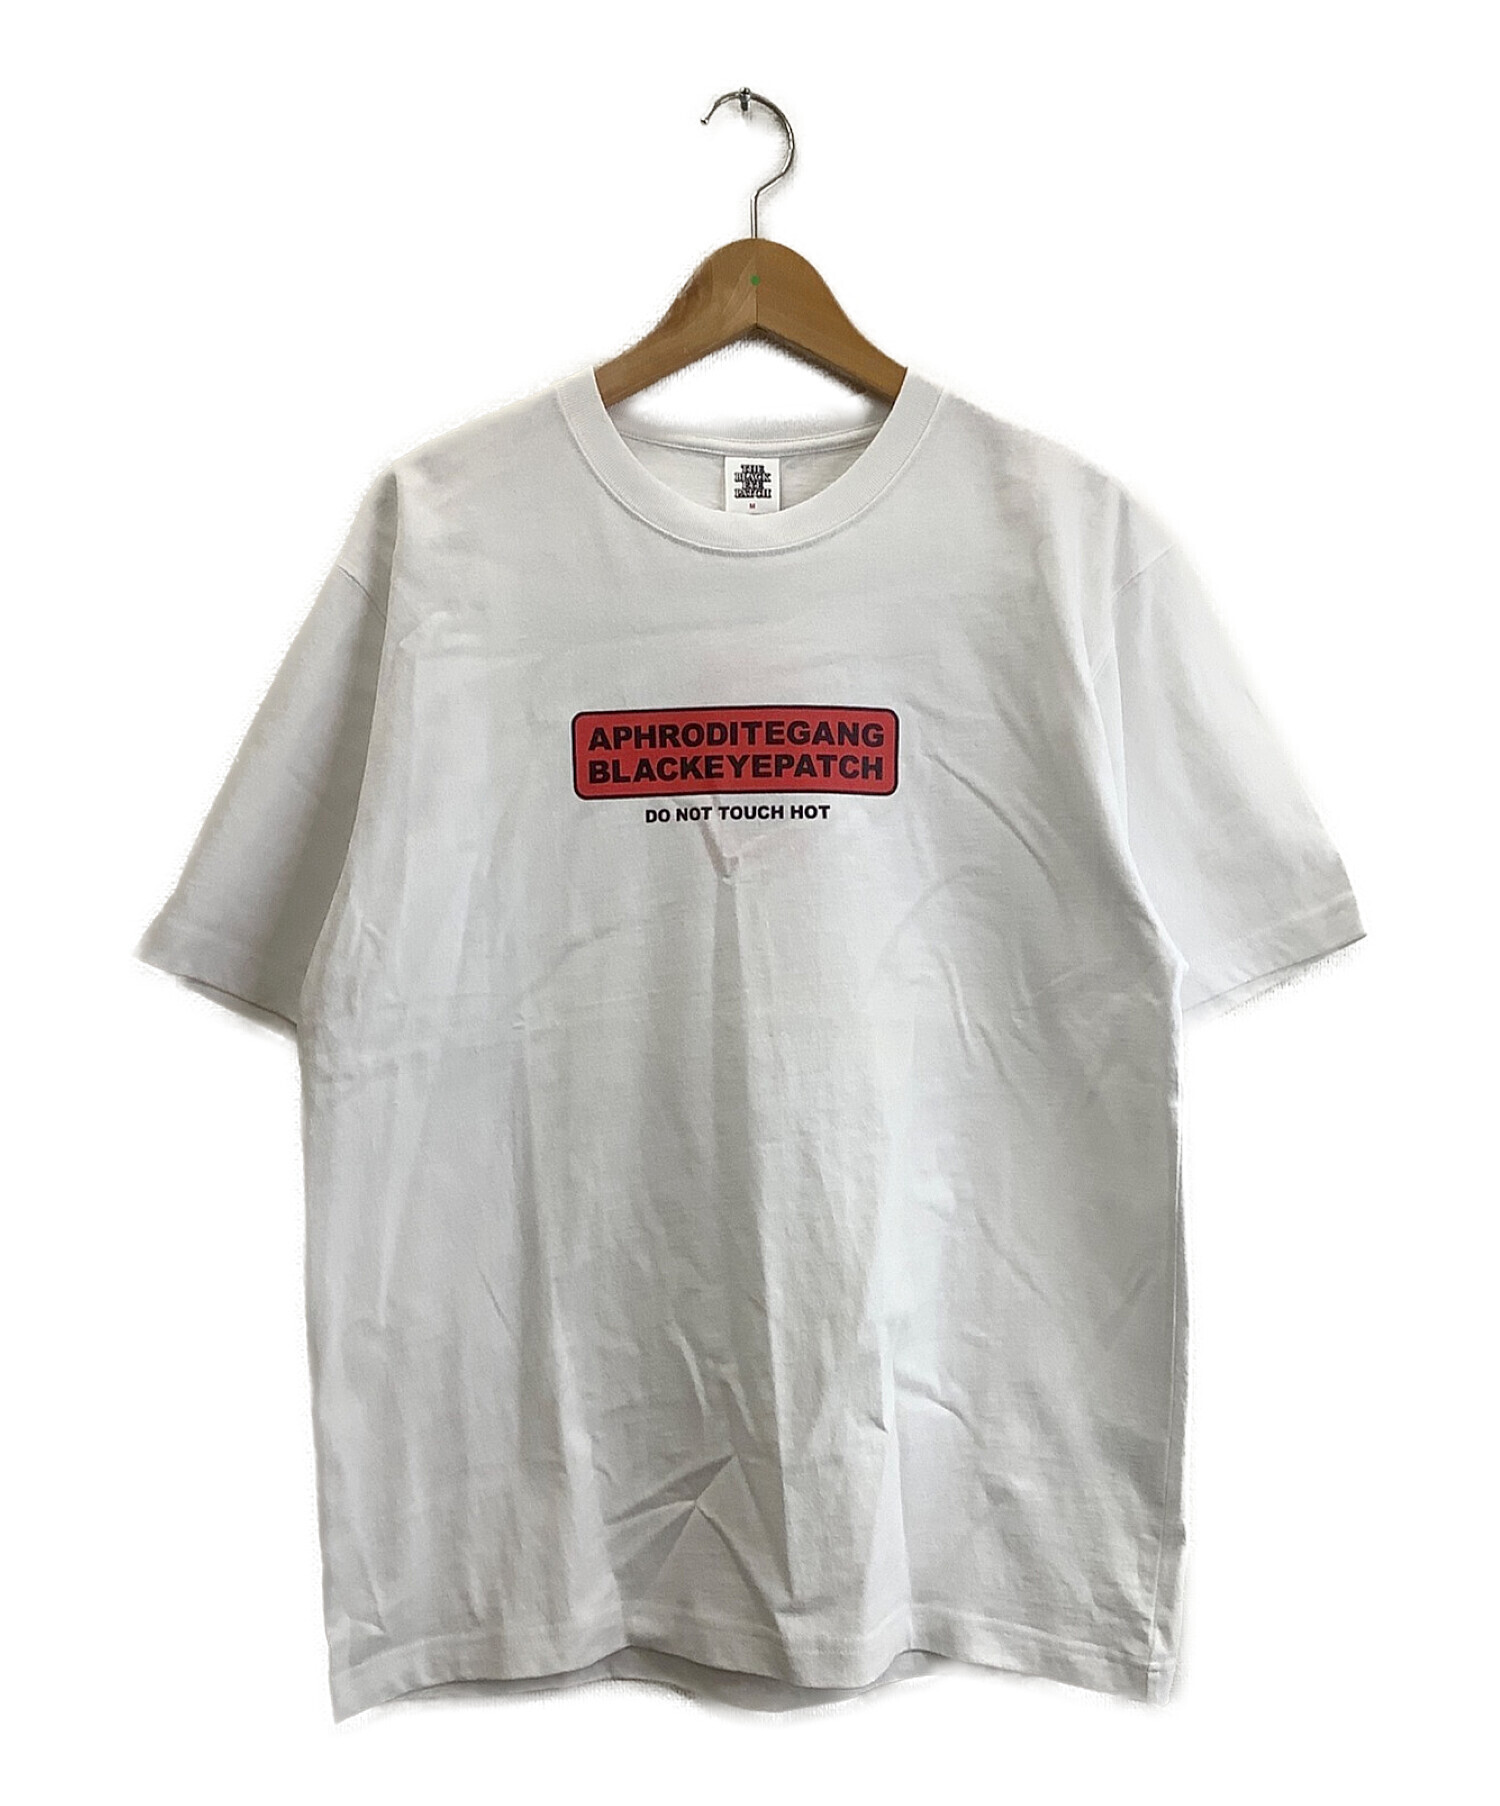 THE BLACK EYE PATCH (ザブラックアイパッチ) Tシャツ ホワイト サイズ:M